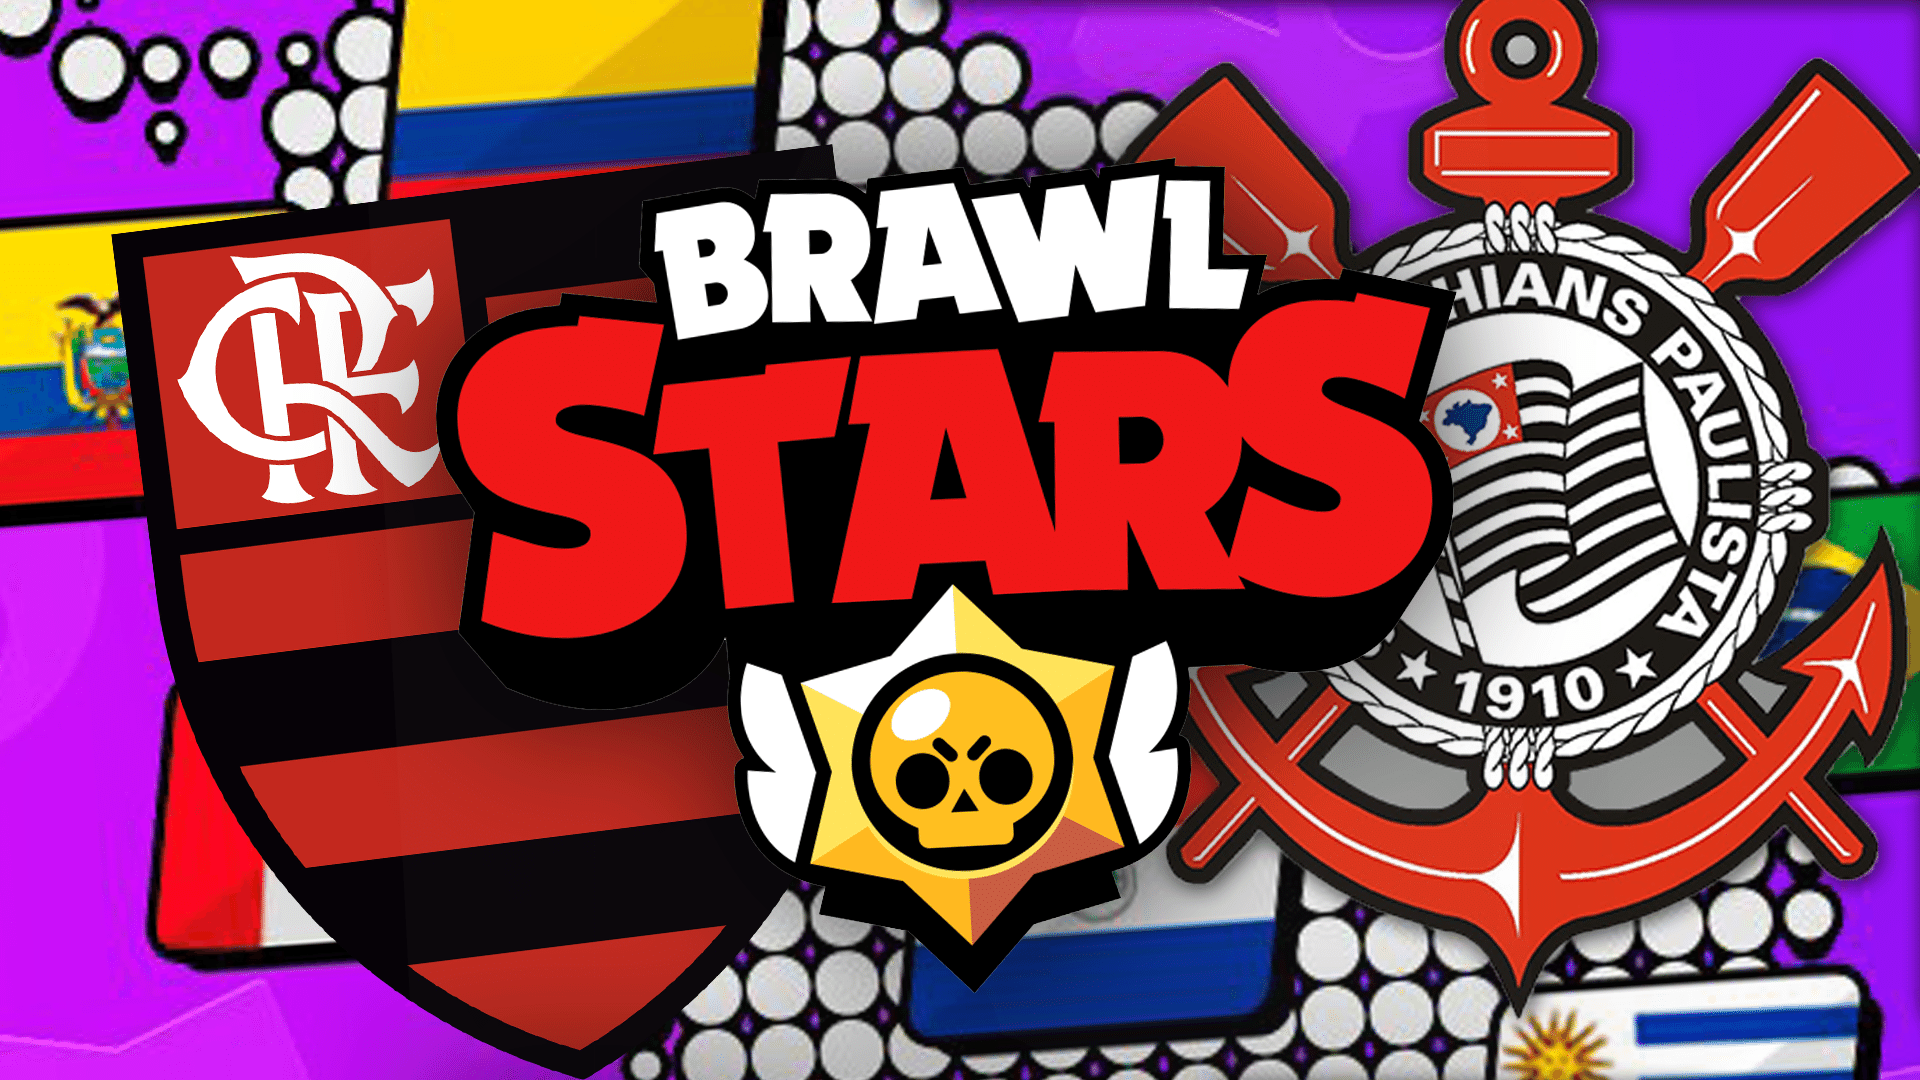 Corinthians E Flamengo Disputam Brawl Stars Master League Veja Times - como criar jogo estilo brawl stars